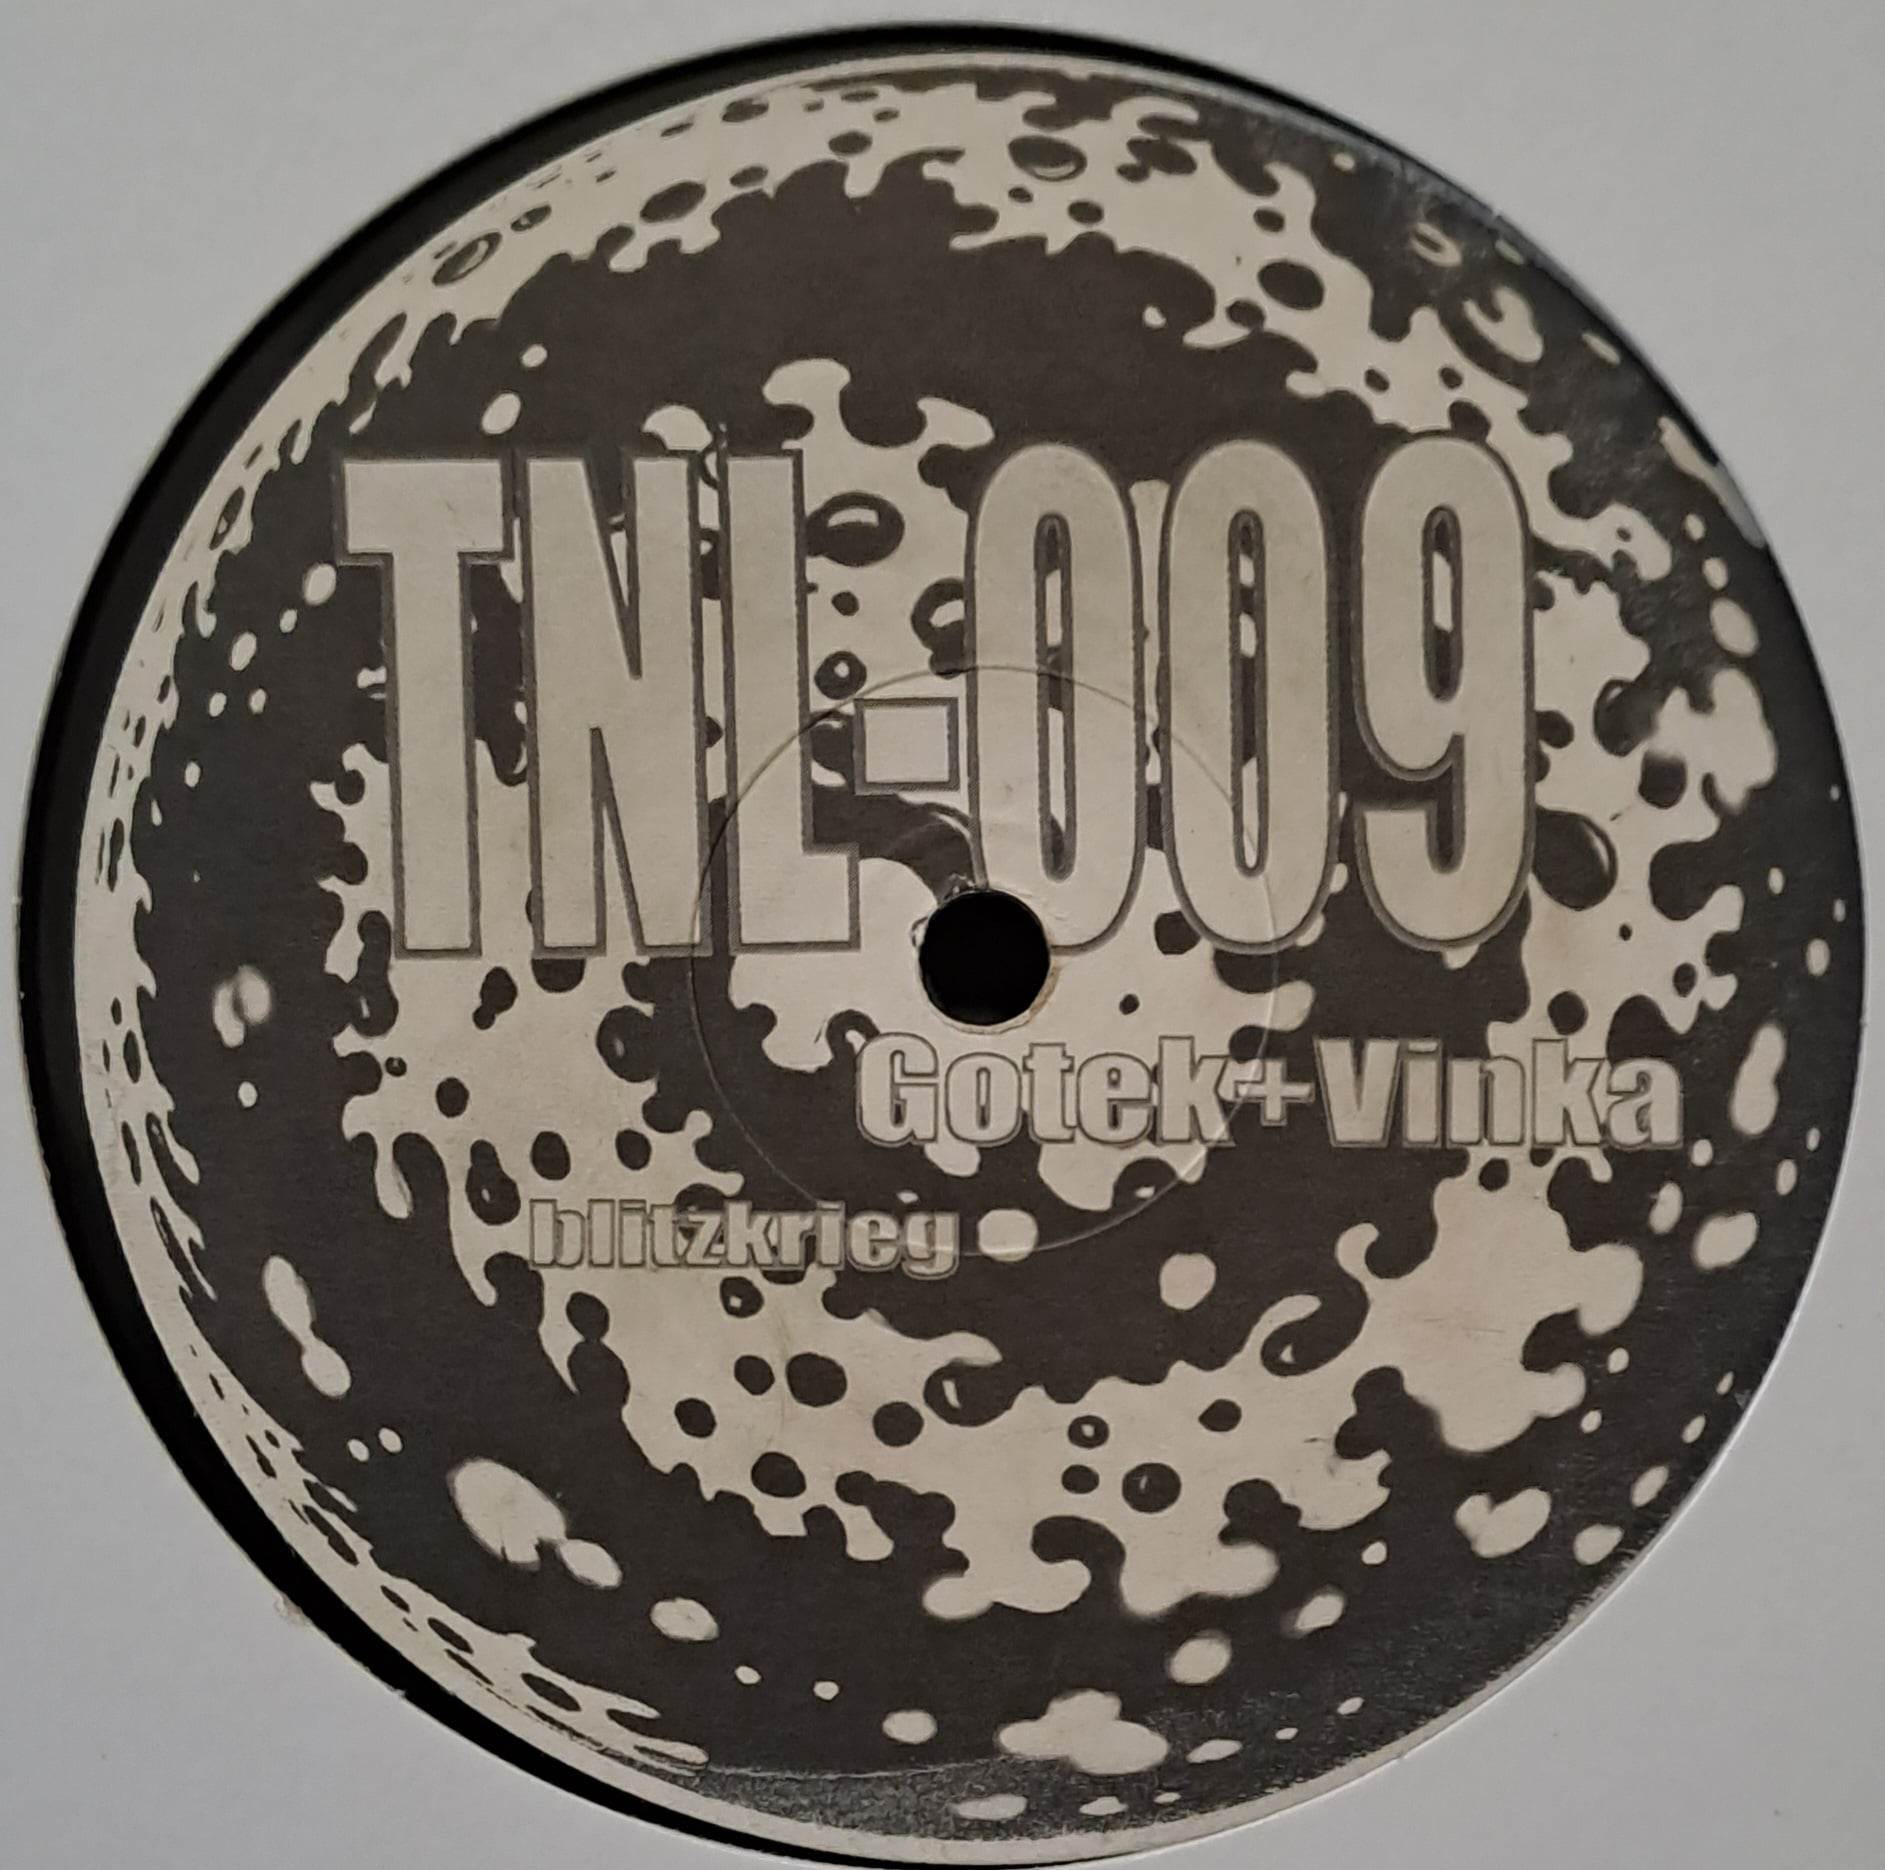 Tek No Logique 09 - vinyle freetekno